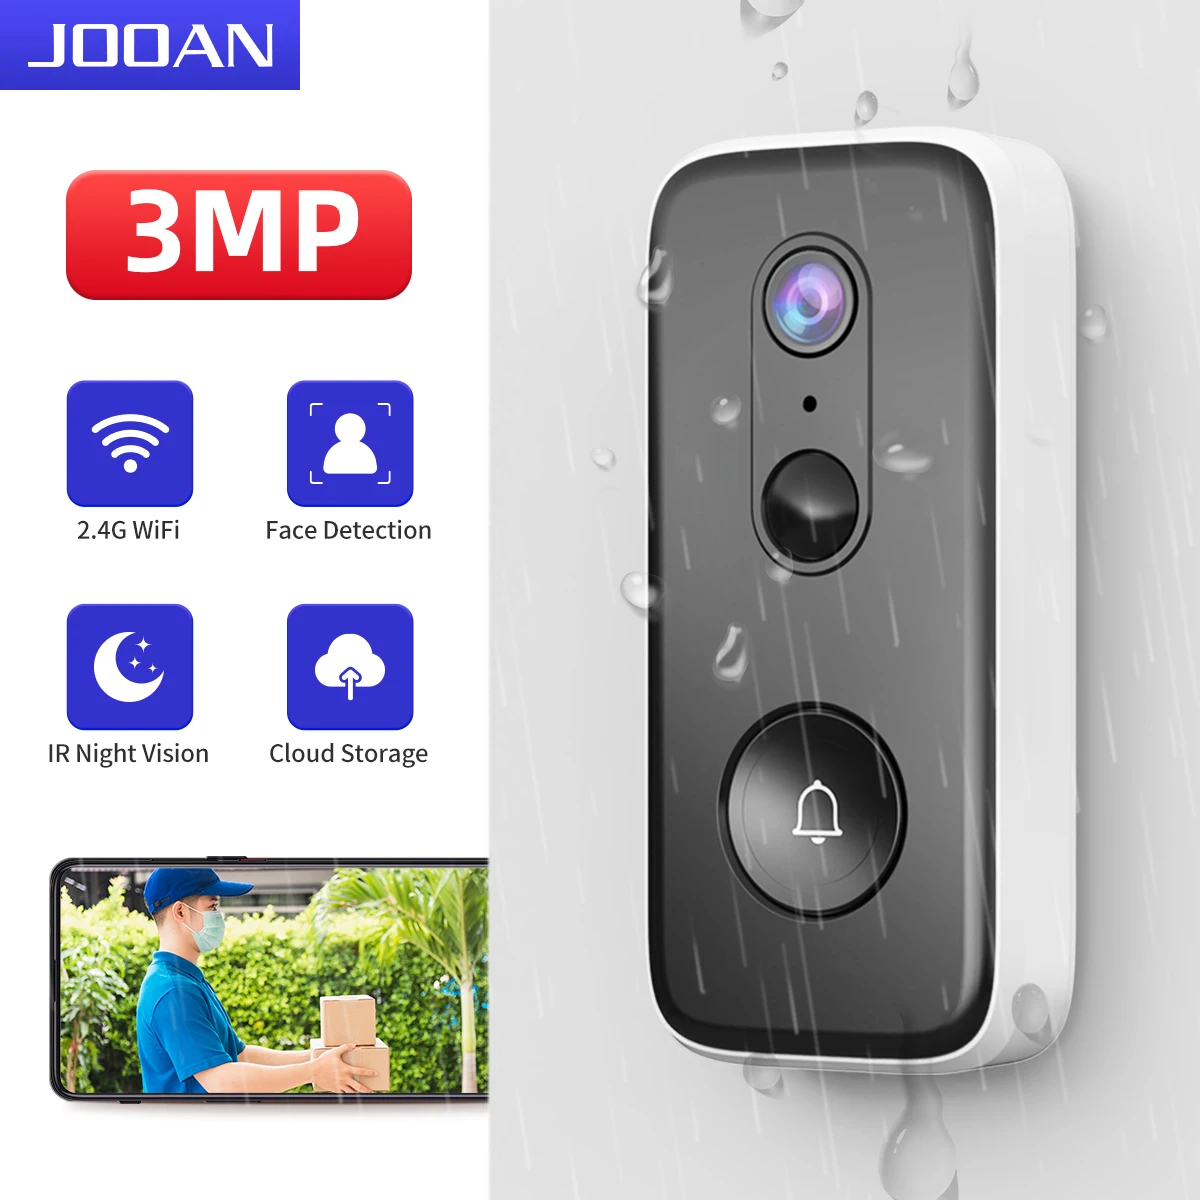 JOOAN 3MP WiFi Video Doorbell Outdoor DoorBell Camera Auto Sensing Door Eye Camera Battery PIR Motion Detector Home Security